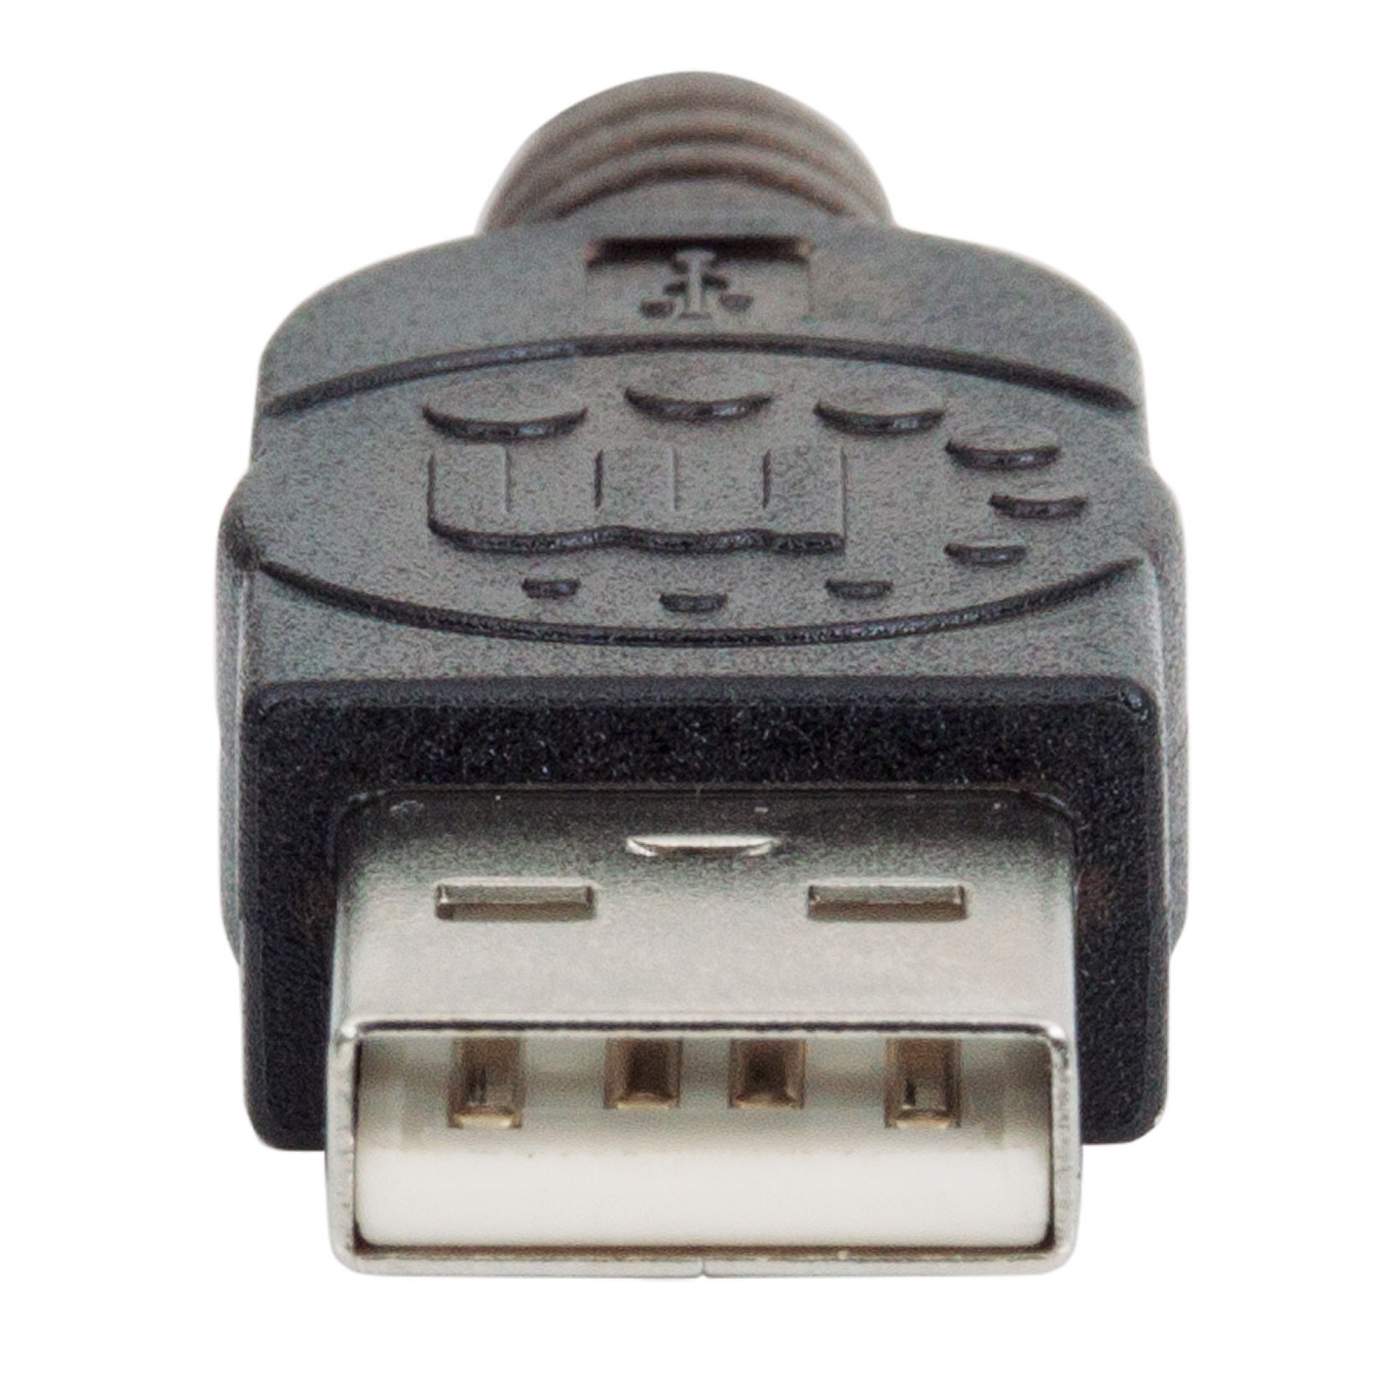 Extensor USB 5 mts 2.0 Manhattan - Fotosol